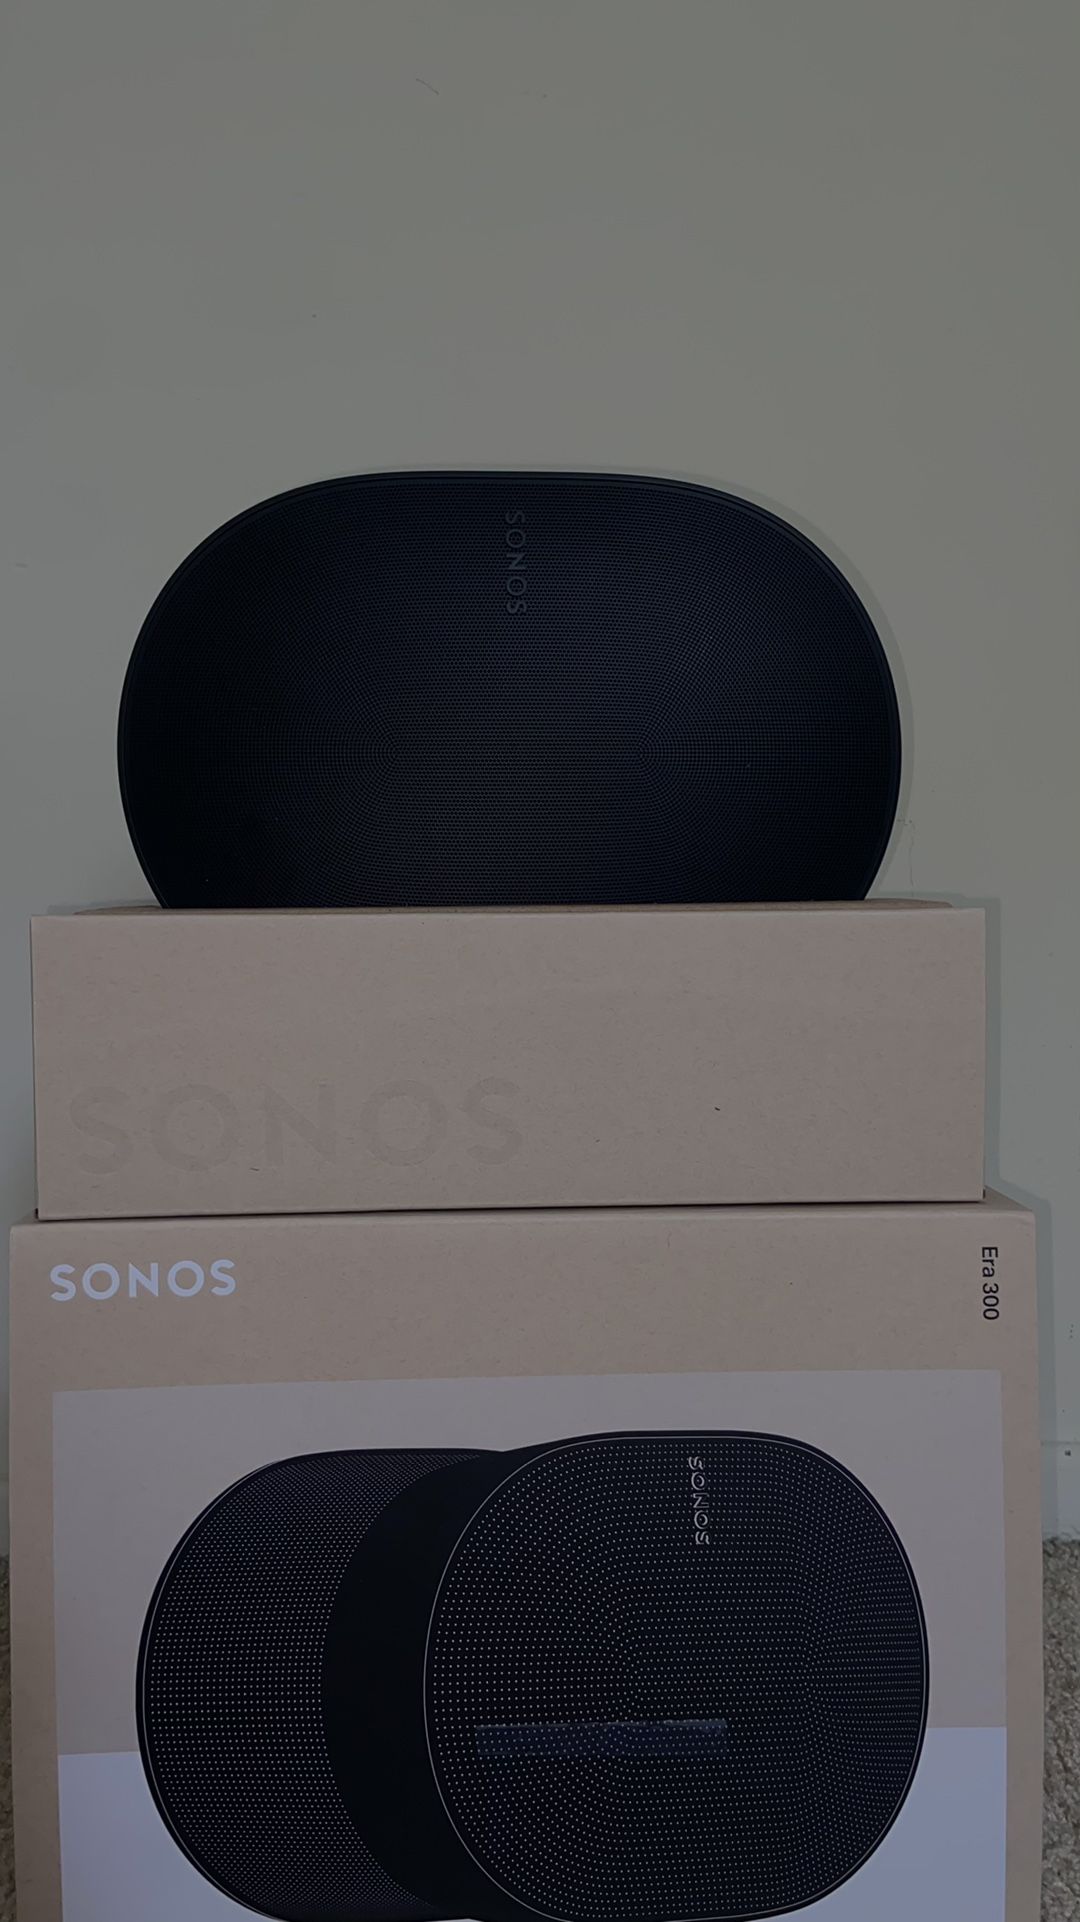 Sonos - Era 300 (NEW- OPEN BOX)